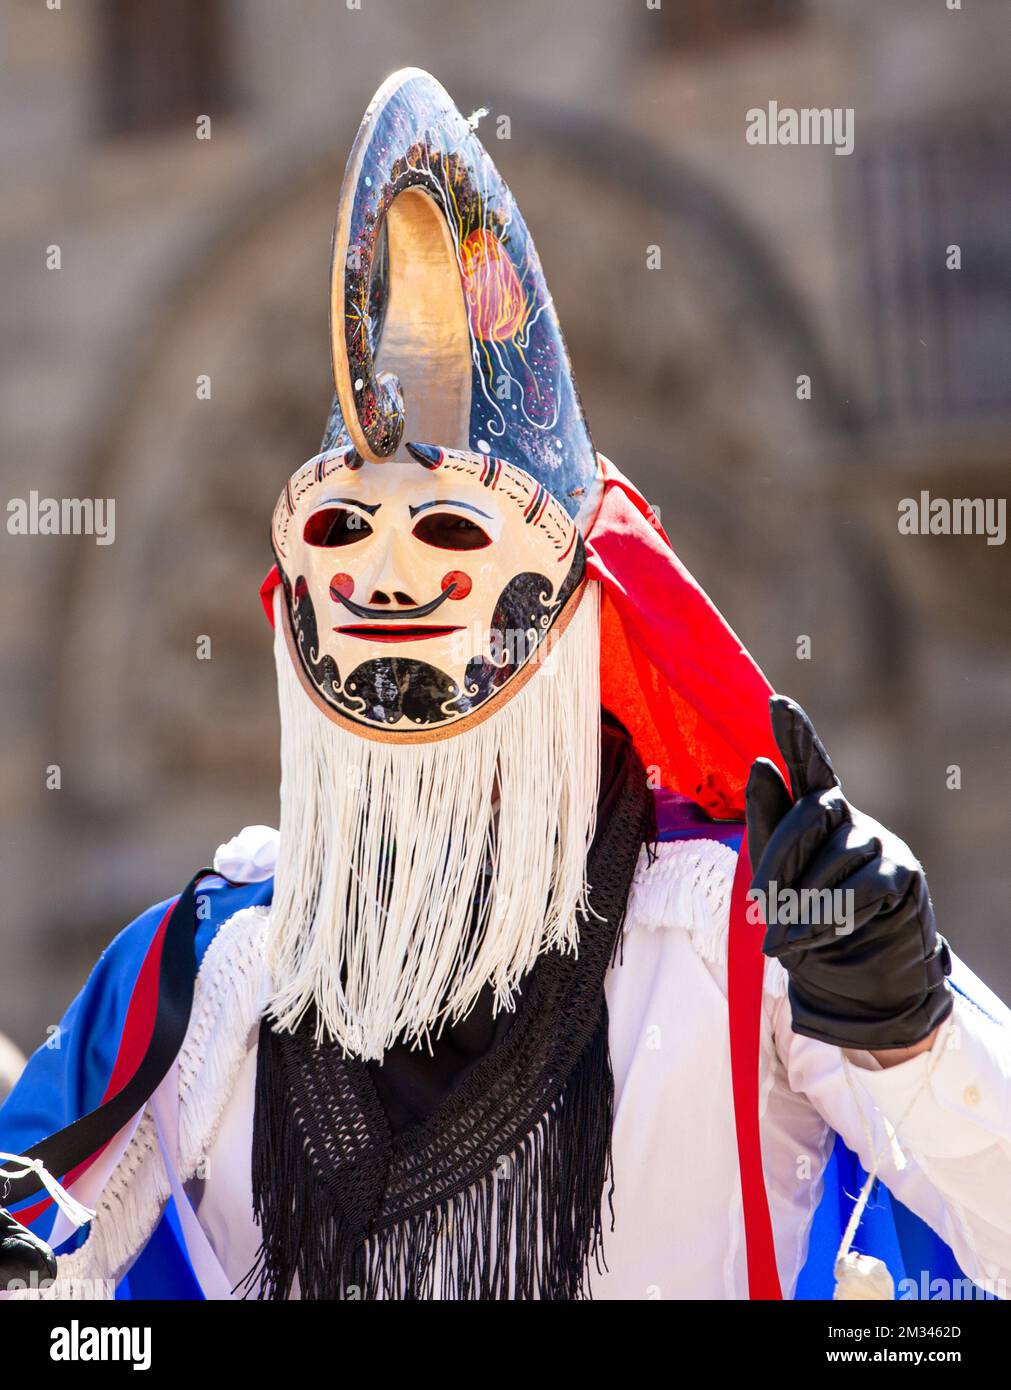 Santiago de Compostela, Spagna; 07 settembre 2019: Uomo con costume tradizionale e maschera chiamato pantalla del carnevale galiziano di Xinzo de Limia, Foto Stock